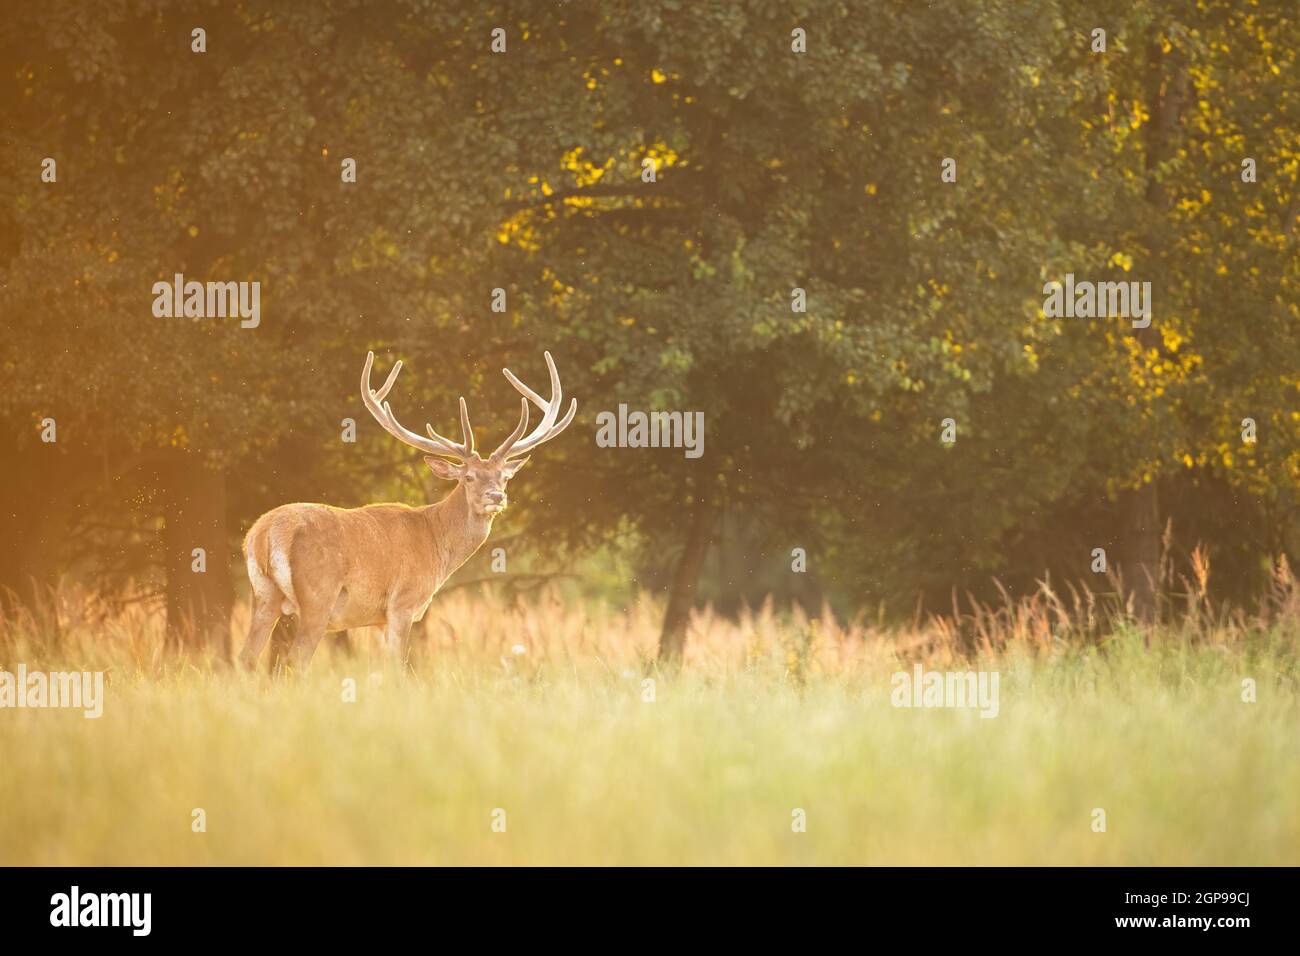 Cerf rouge paisible, cervus elaphus, stag debout sur un pré avec de l'herbe verte sous les arbres. Paysage sauvage saisonnier avec espace de copie. Mammifère avec antl Banque D'Images